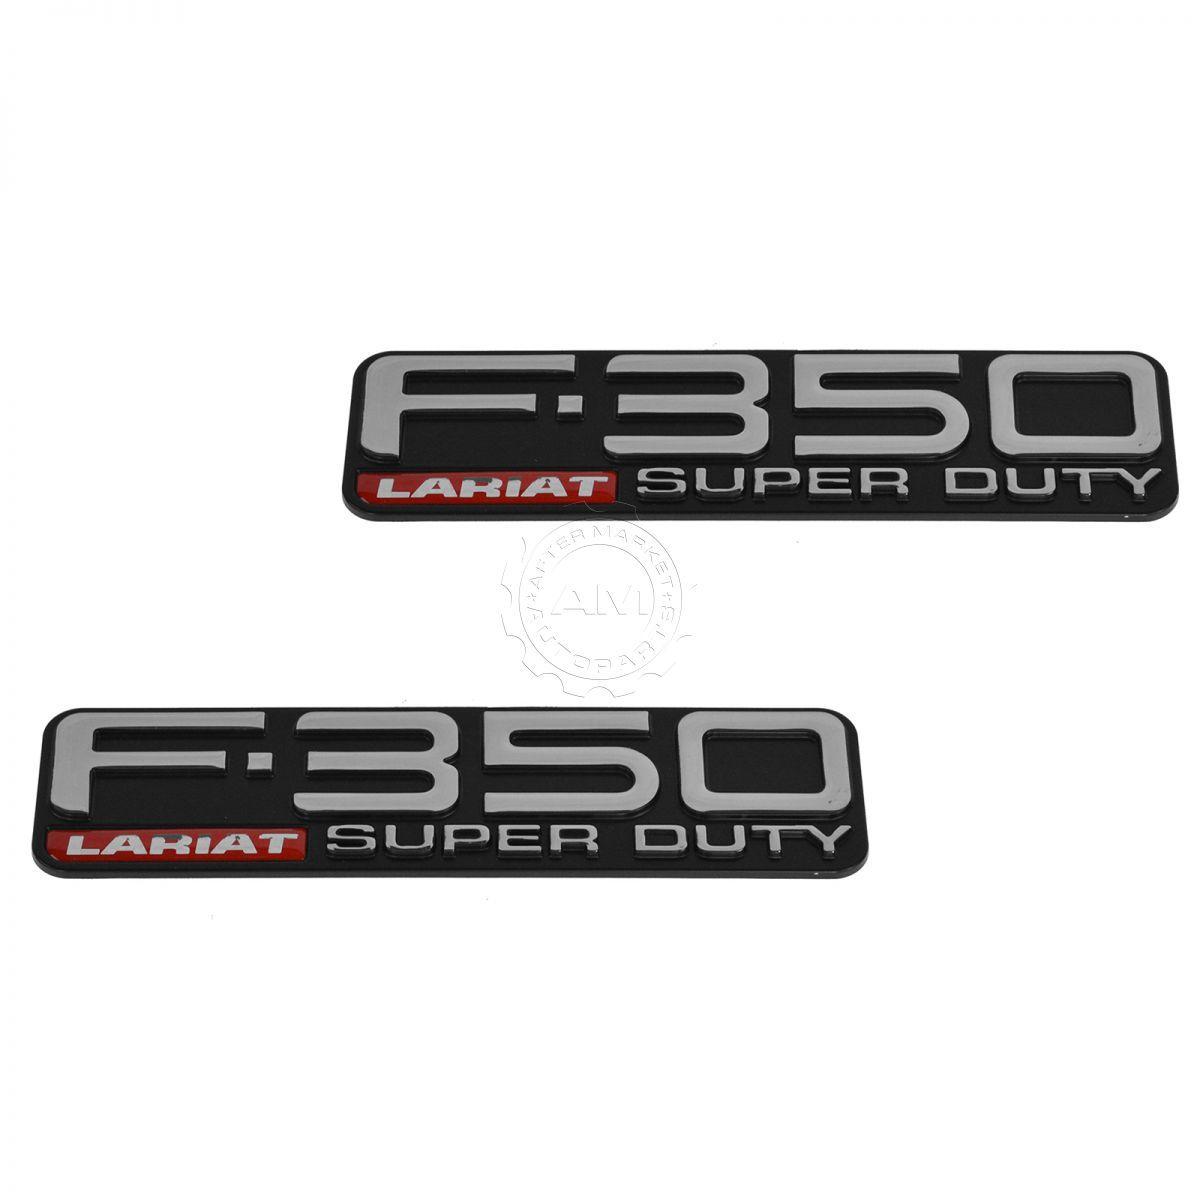 F-350 Logo - Details About OEM F 350 Lariat Super Duty Fender Nameplate Emblem Pair Set For Ford Pickup New